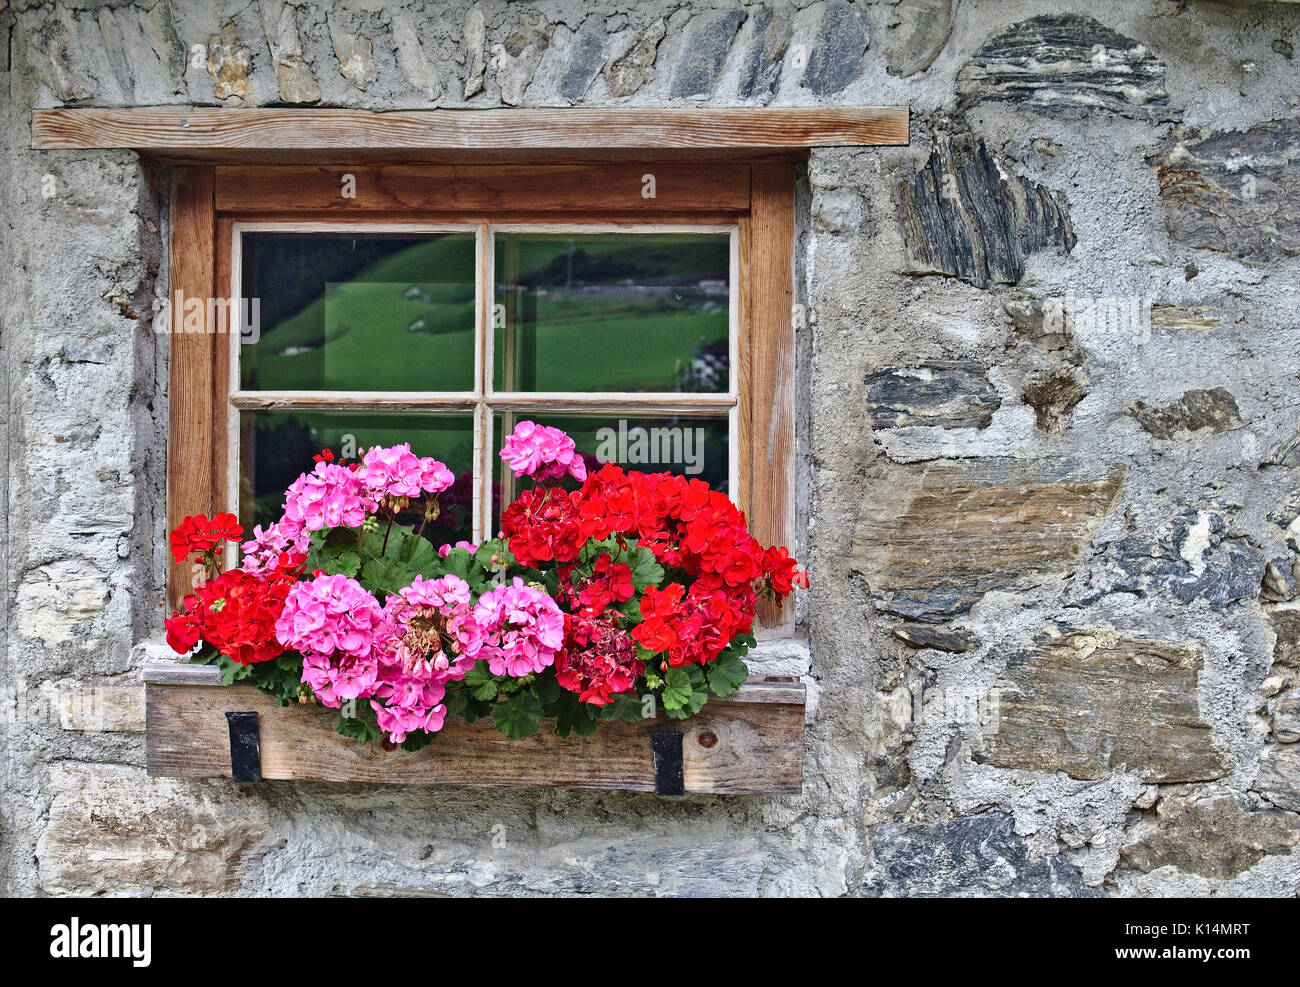 Mur d'une vieille maison de ferme en pierres de champ avec fenêtre et fleurs rouge vif Banque D'Images